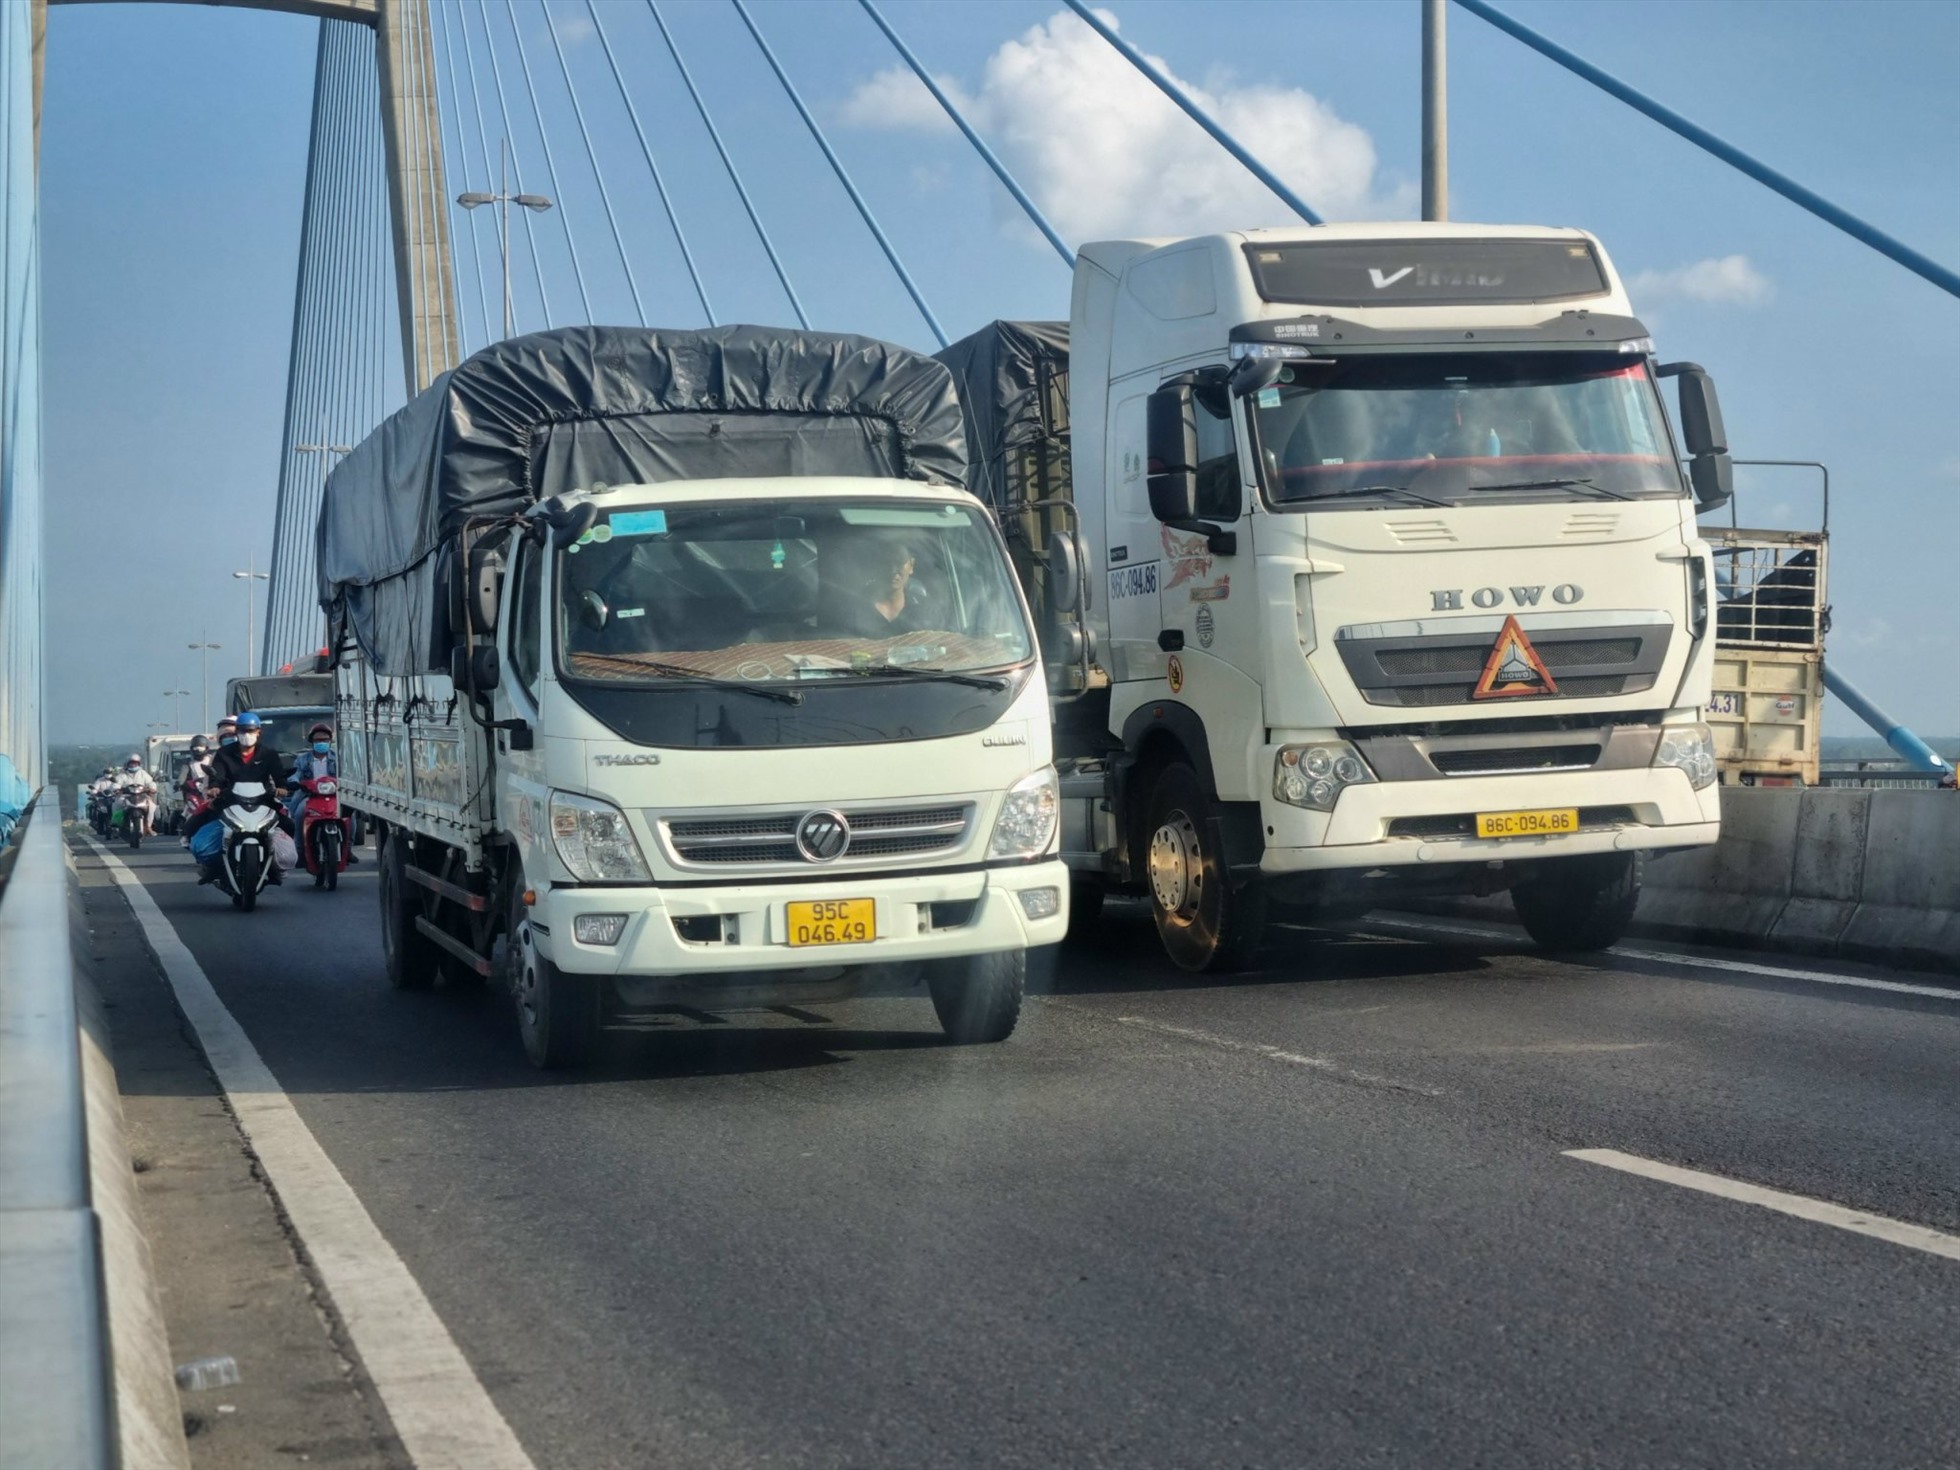 Chiều 3.5, phương tiện tham gia giao thông đoạn qua cầu Mỹ Thuận (Vĩnh Long) không quá nhiều, chỉ tăng khoảng 10%, không xảy ra ùn tắc giao thông.